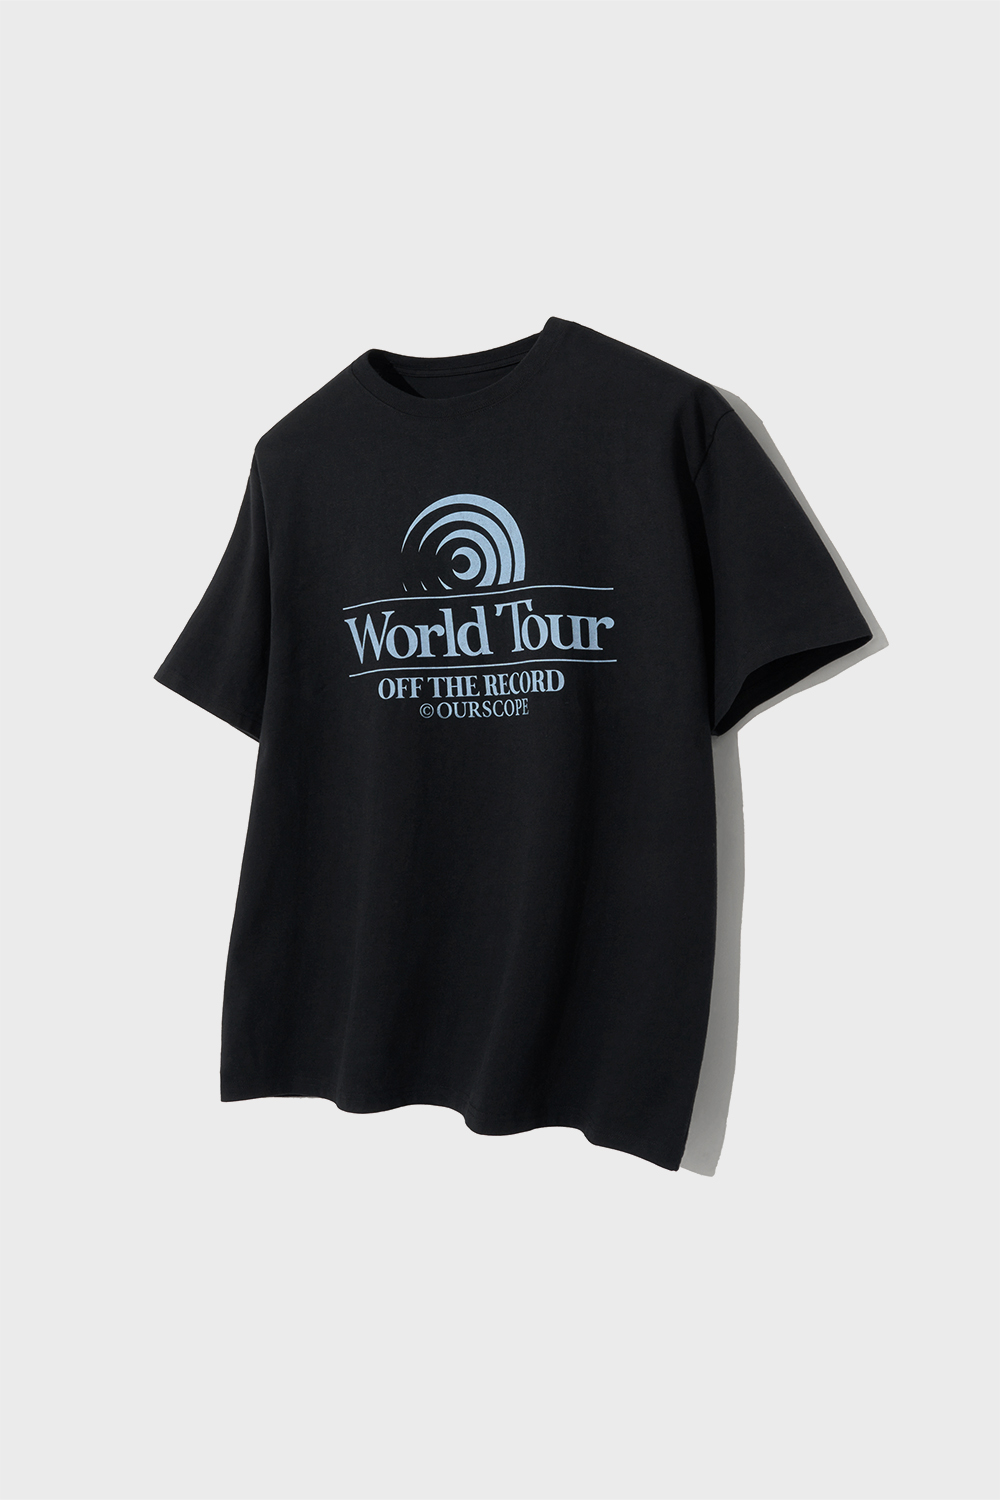 World Tour OTR T-Shirts (Black)